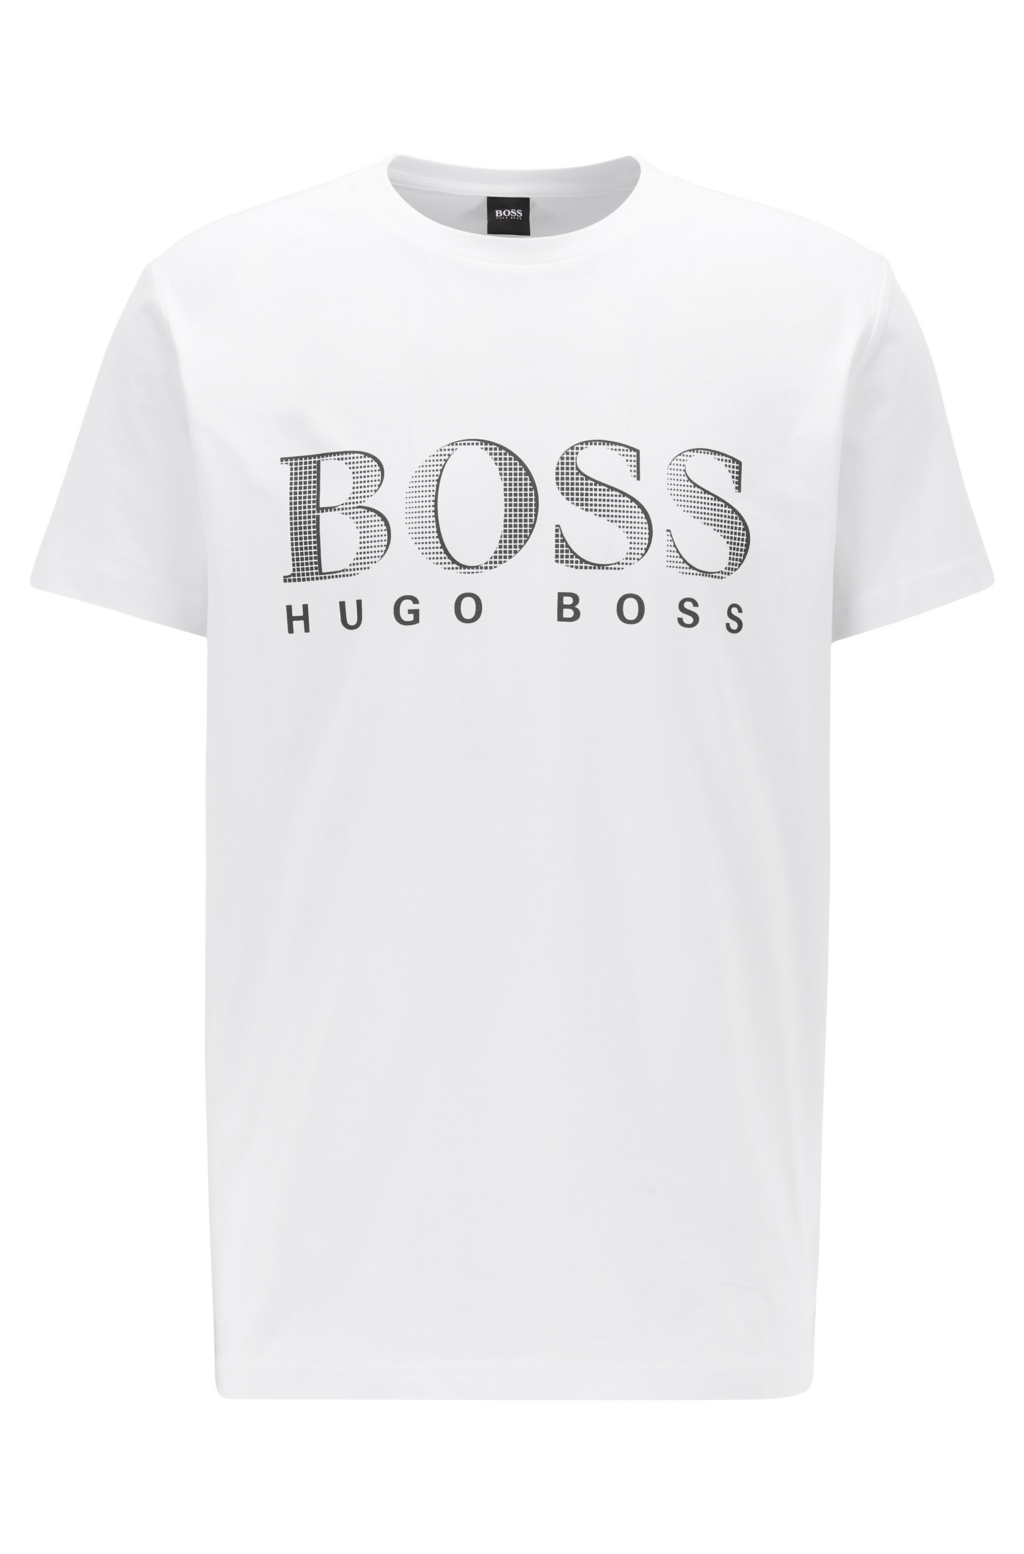 Hugo Boss mens Cotton Stretch Ls Crew Neck Shirt